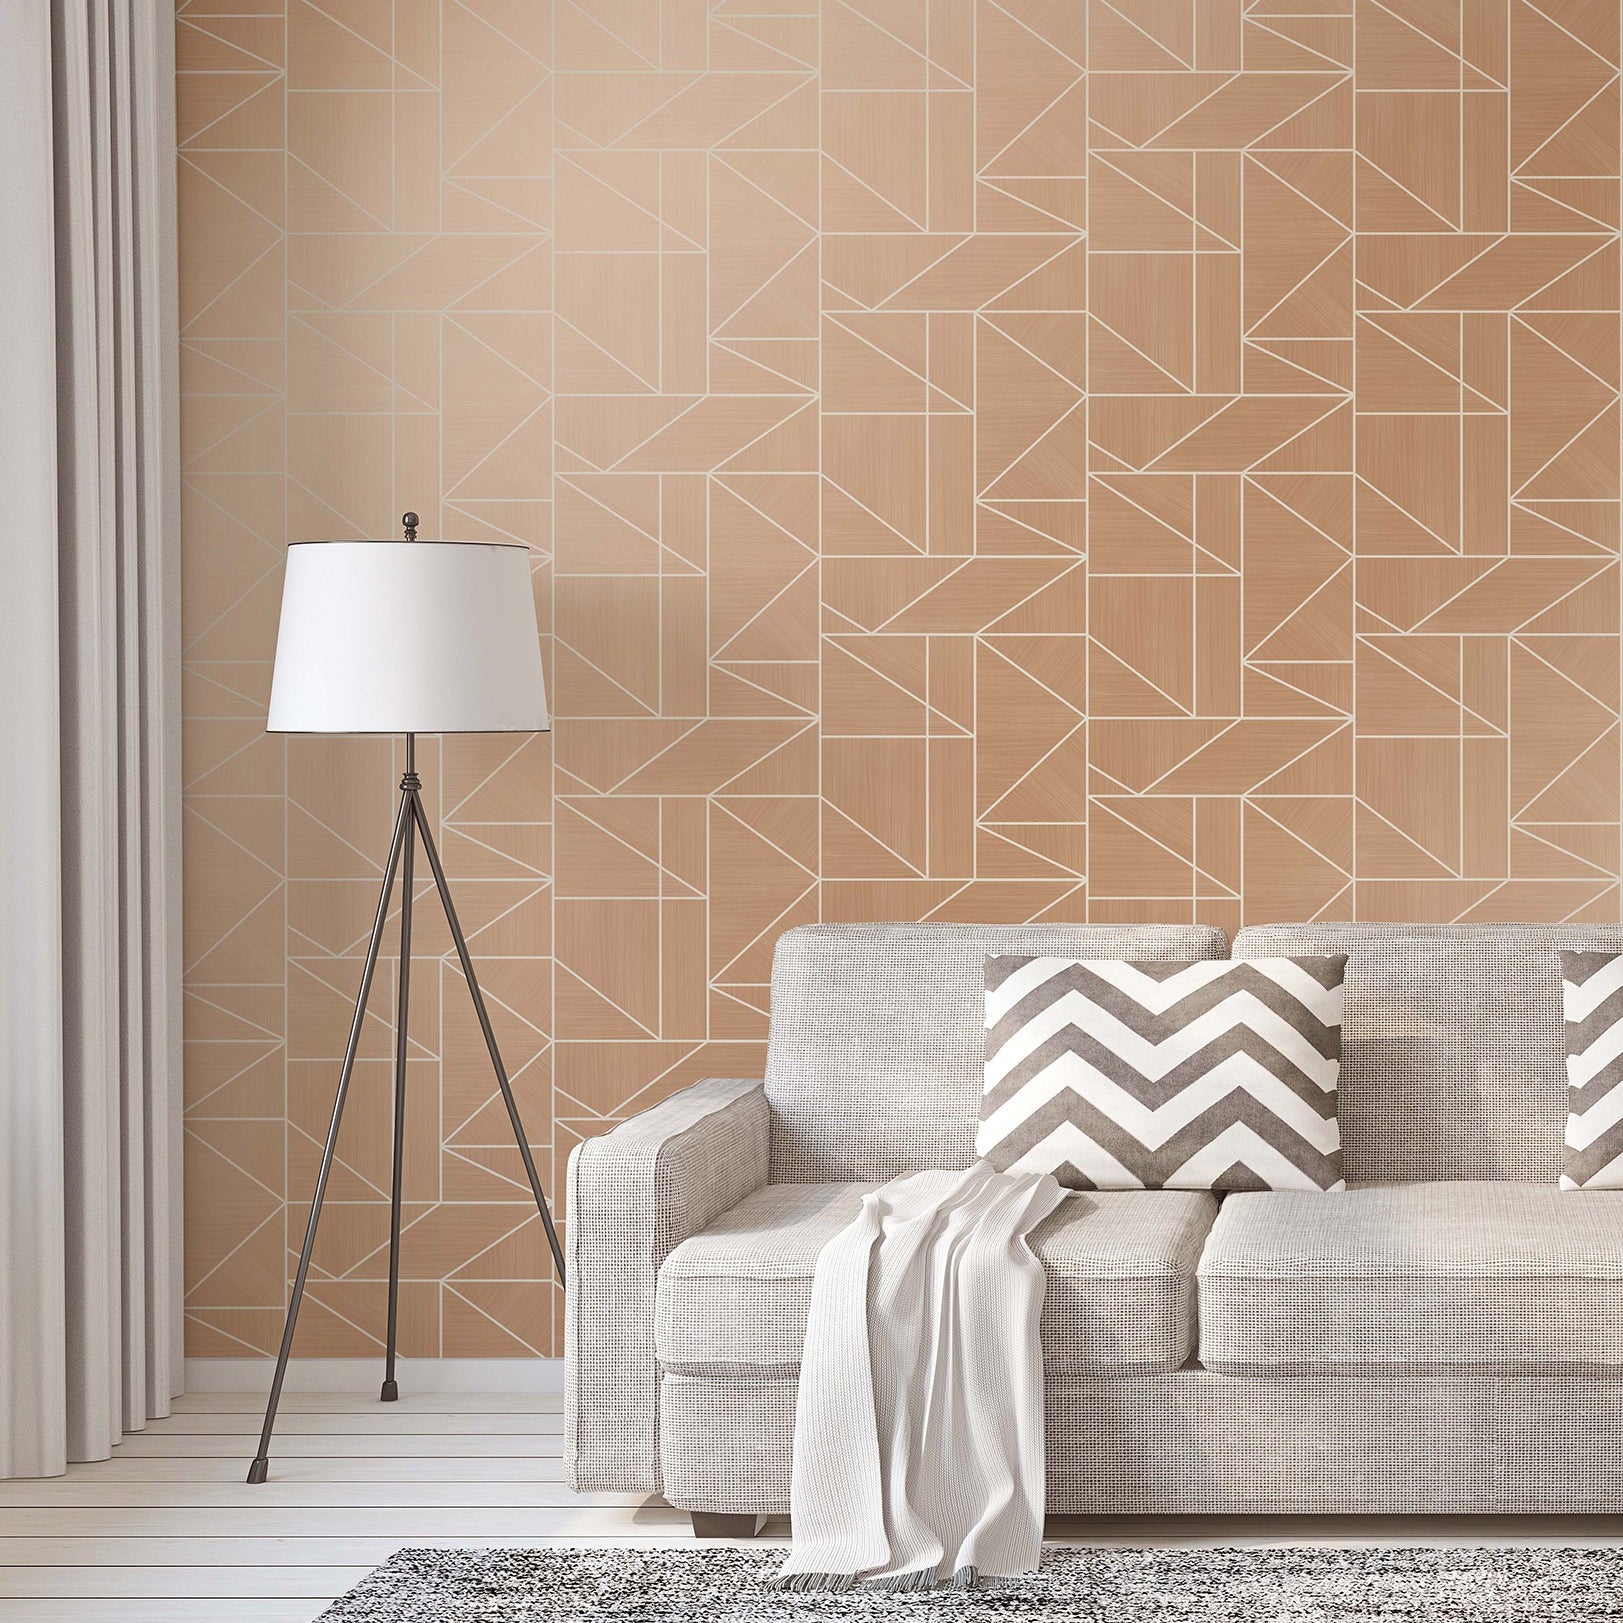 Search 2813-m1382 kitchen pinks geometrics wallpaper advantage Wallpaper